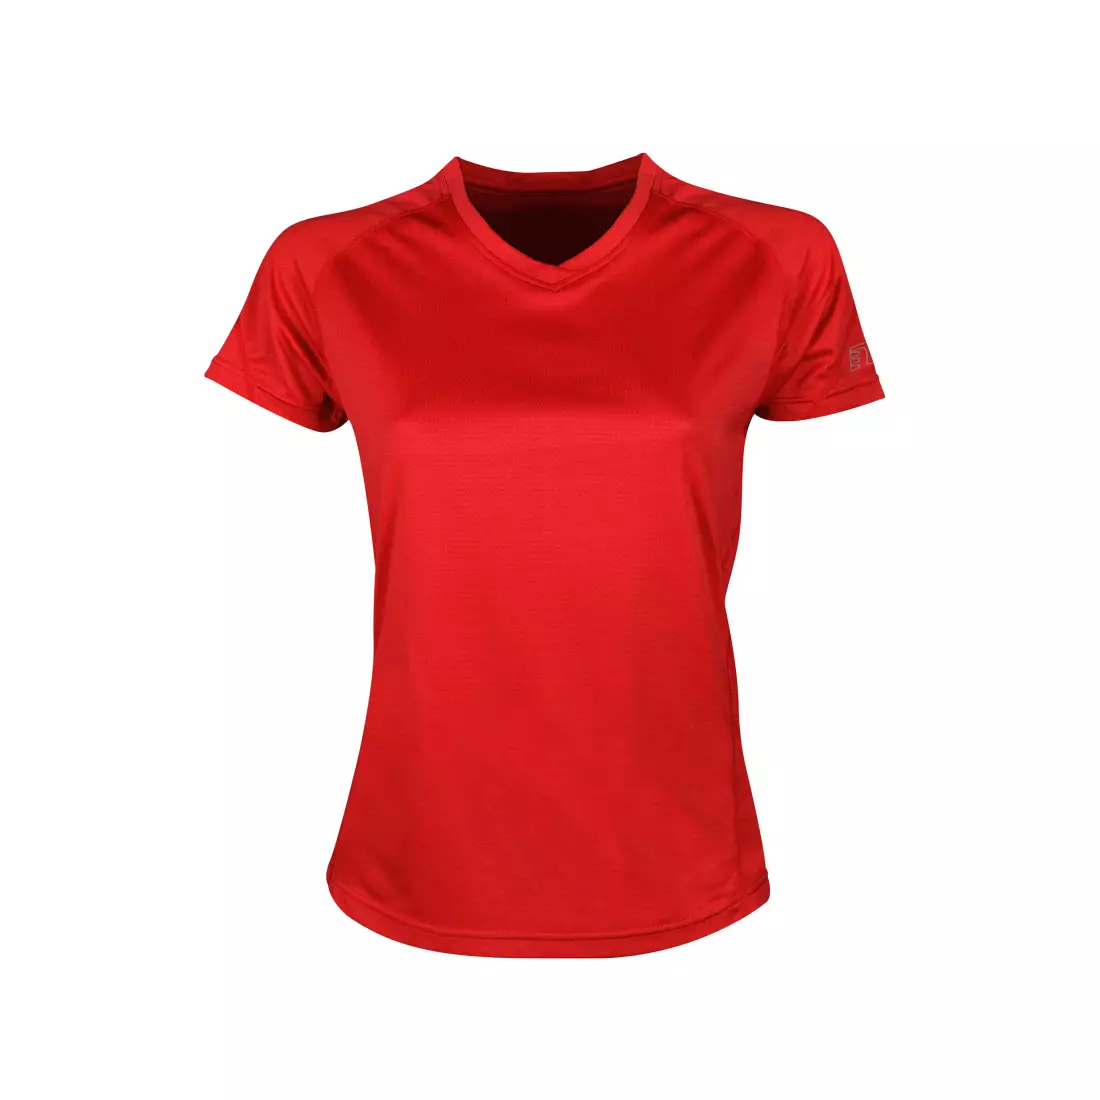 NEWLINE BASE COOLMAX TEE - women's running T-shirt 13603-04